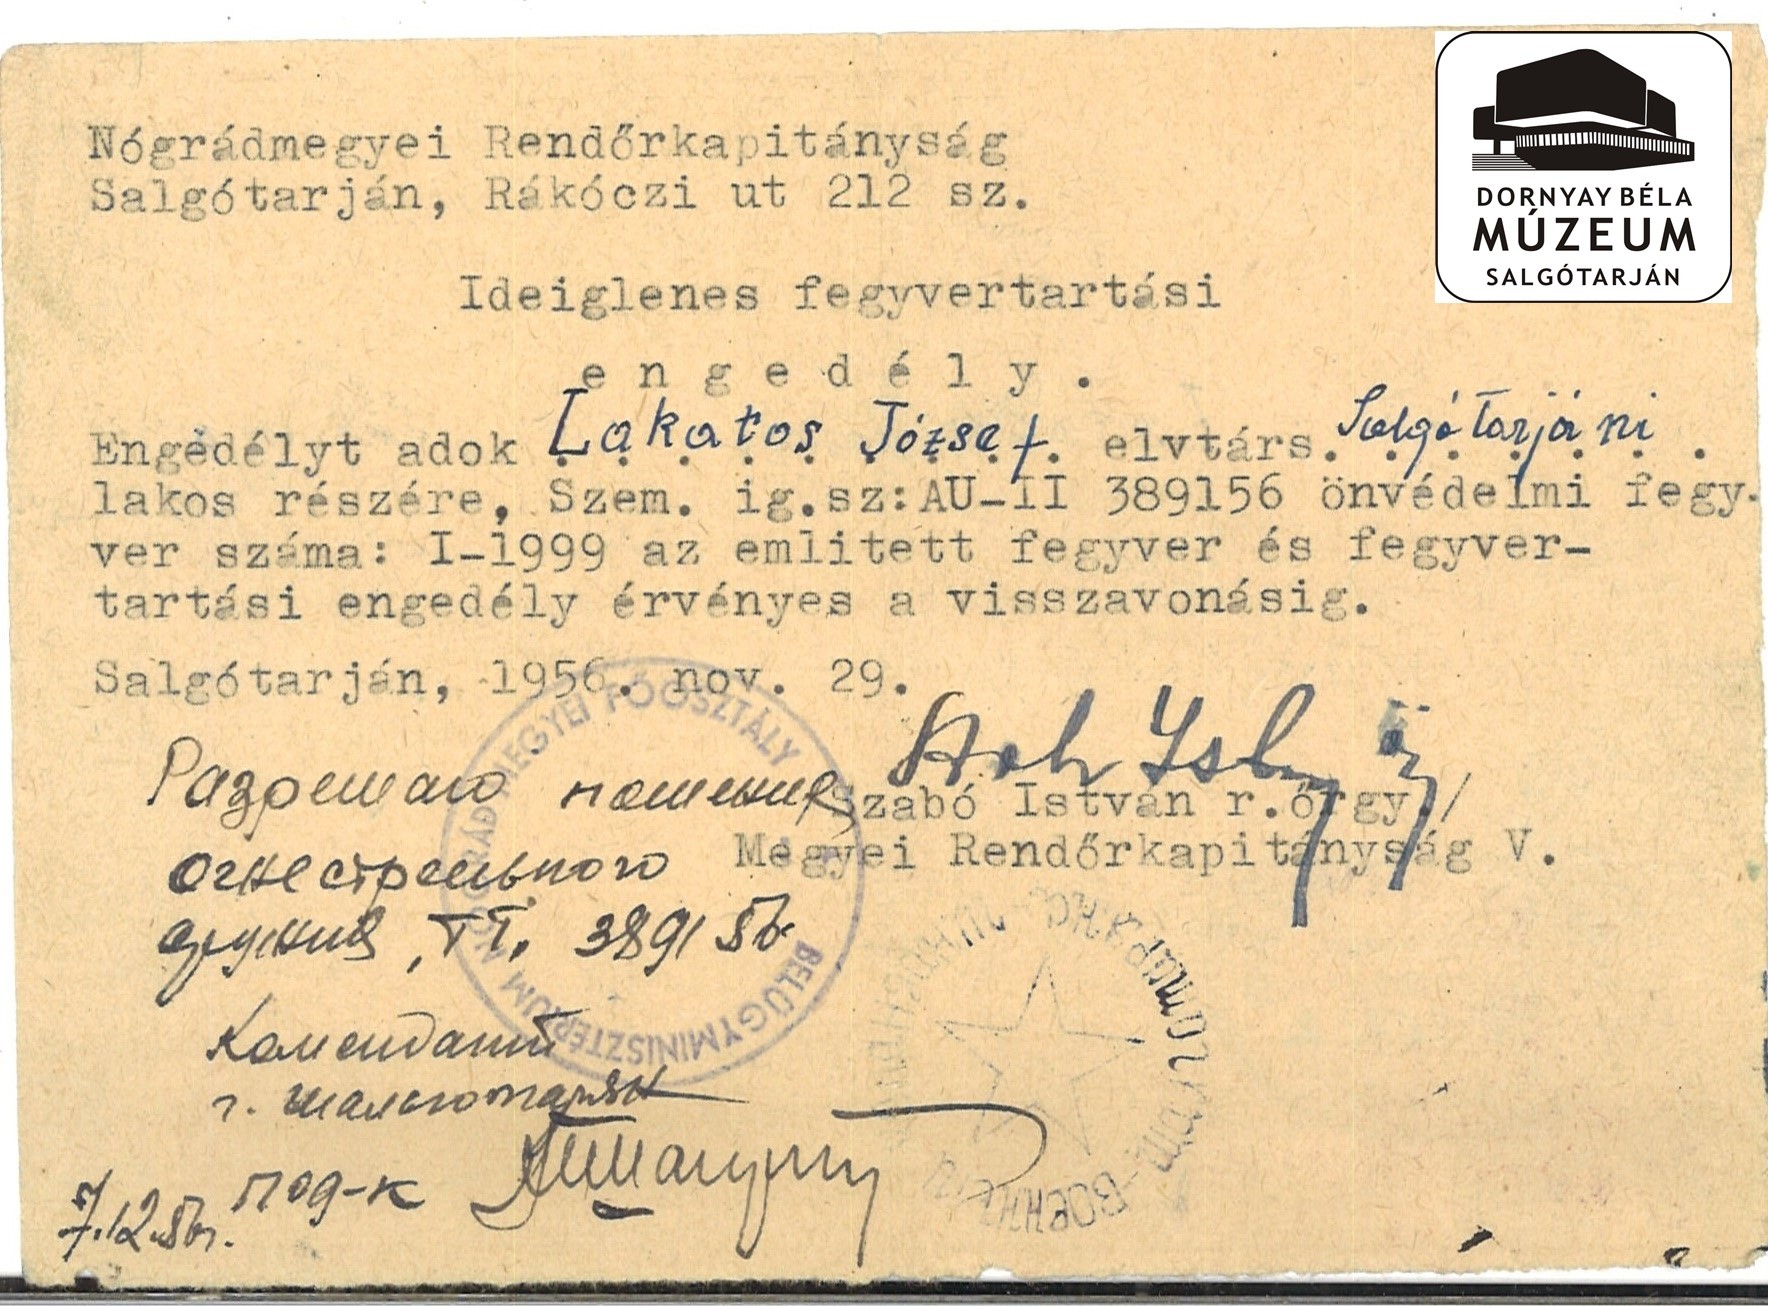 Lakatos József ideiglenes fegyvertartási engedélye (Dornyay Béla Múzeum, Salgótarján CC BY-NC-SA)